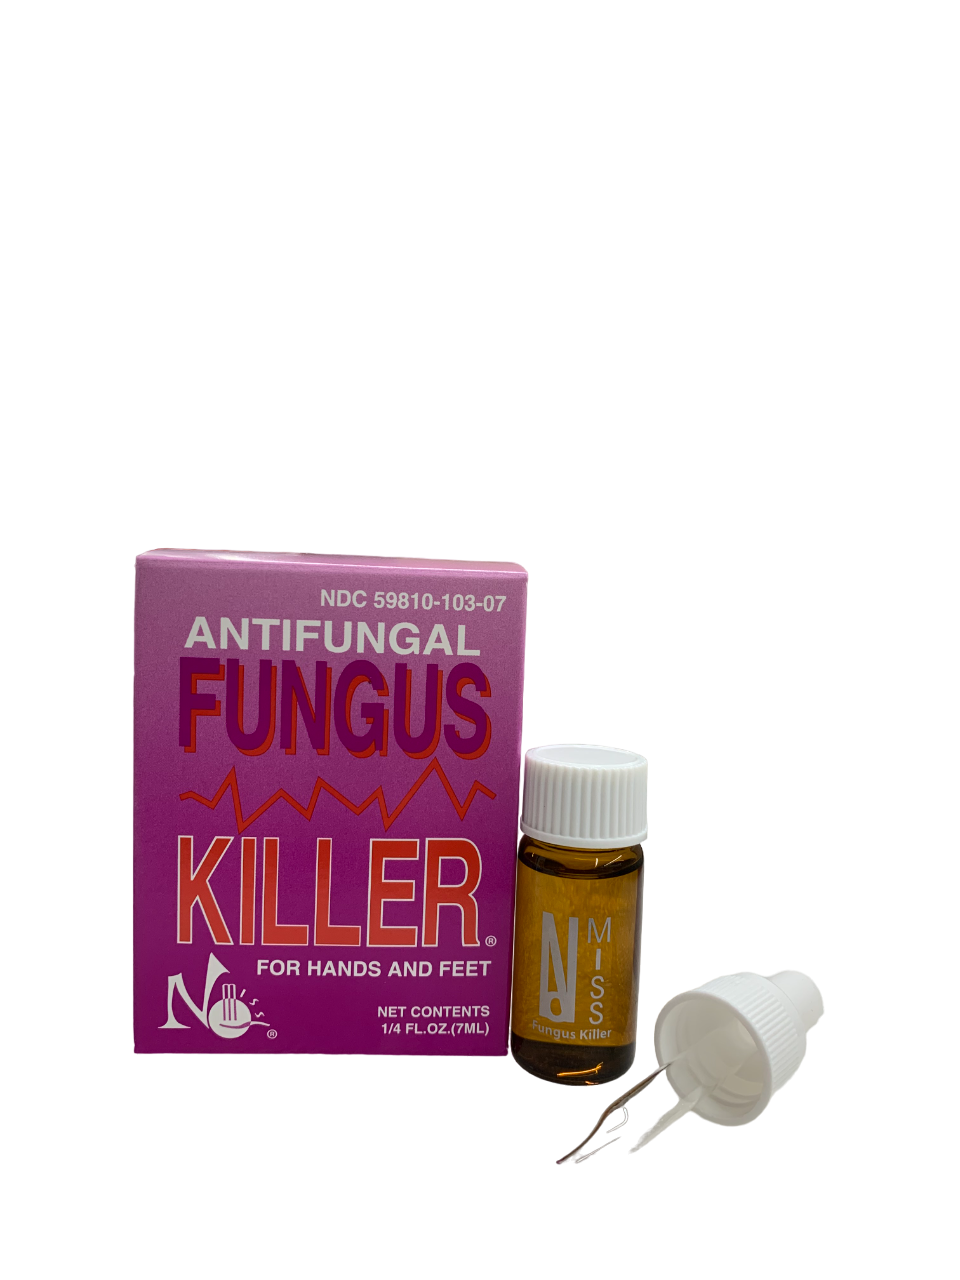 Antifungal Fungus Killer